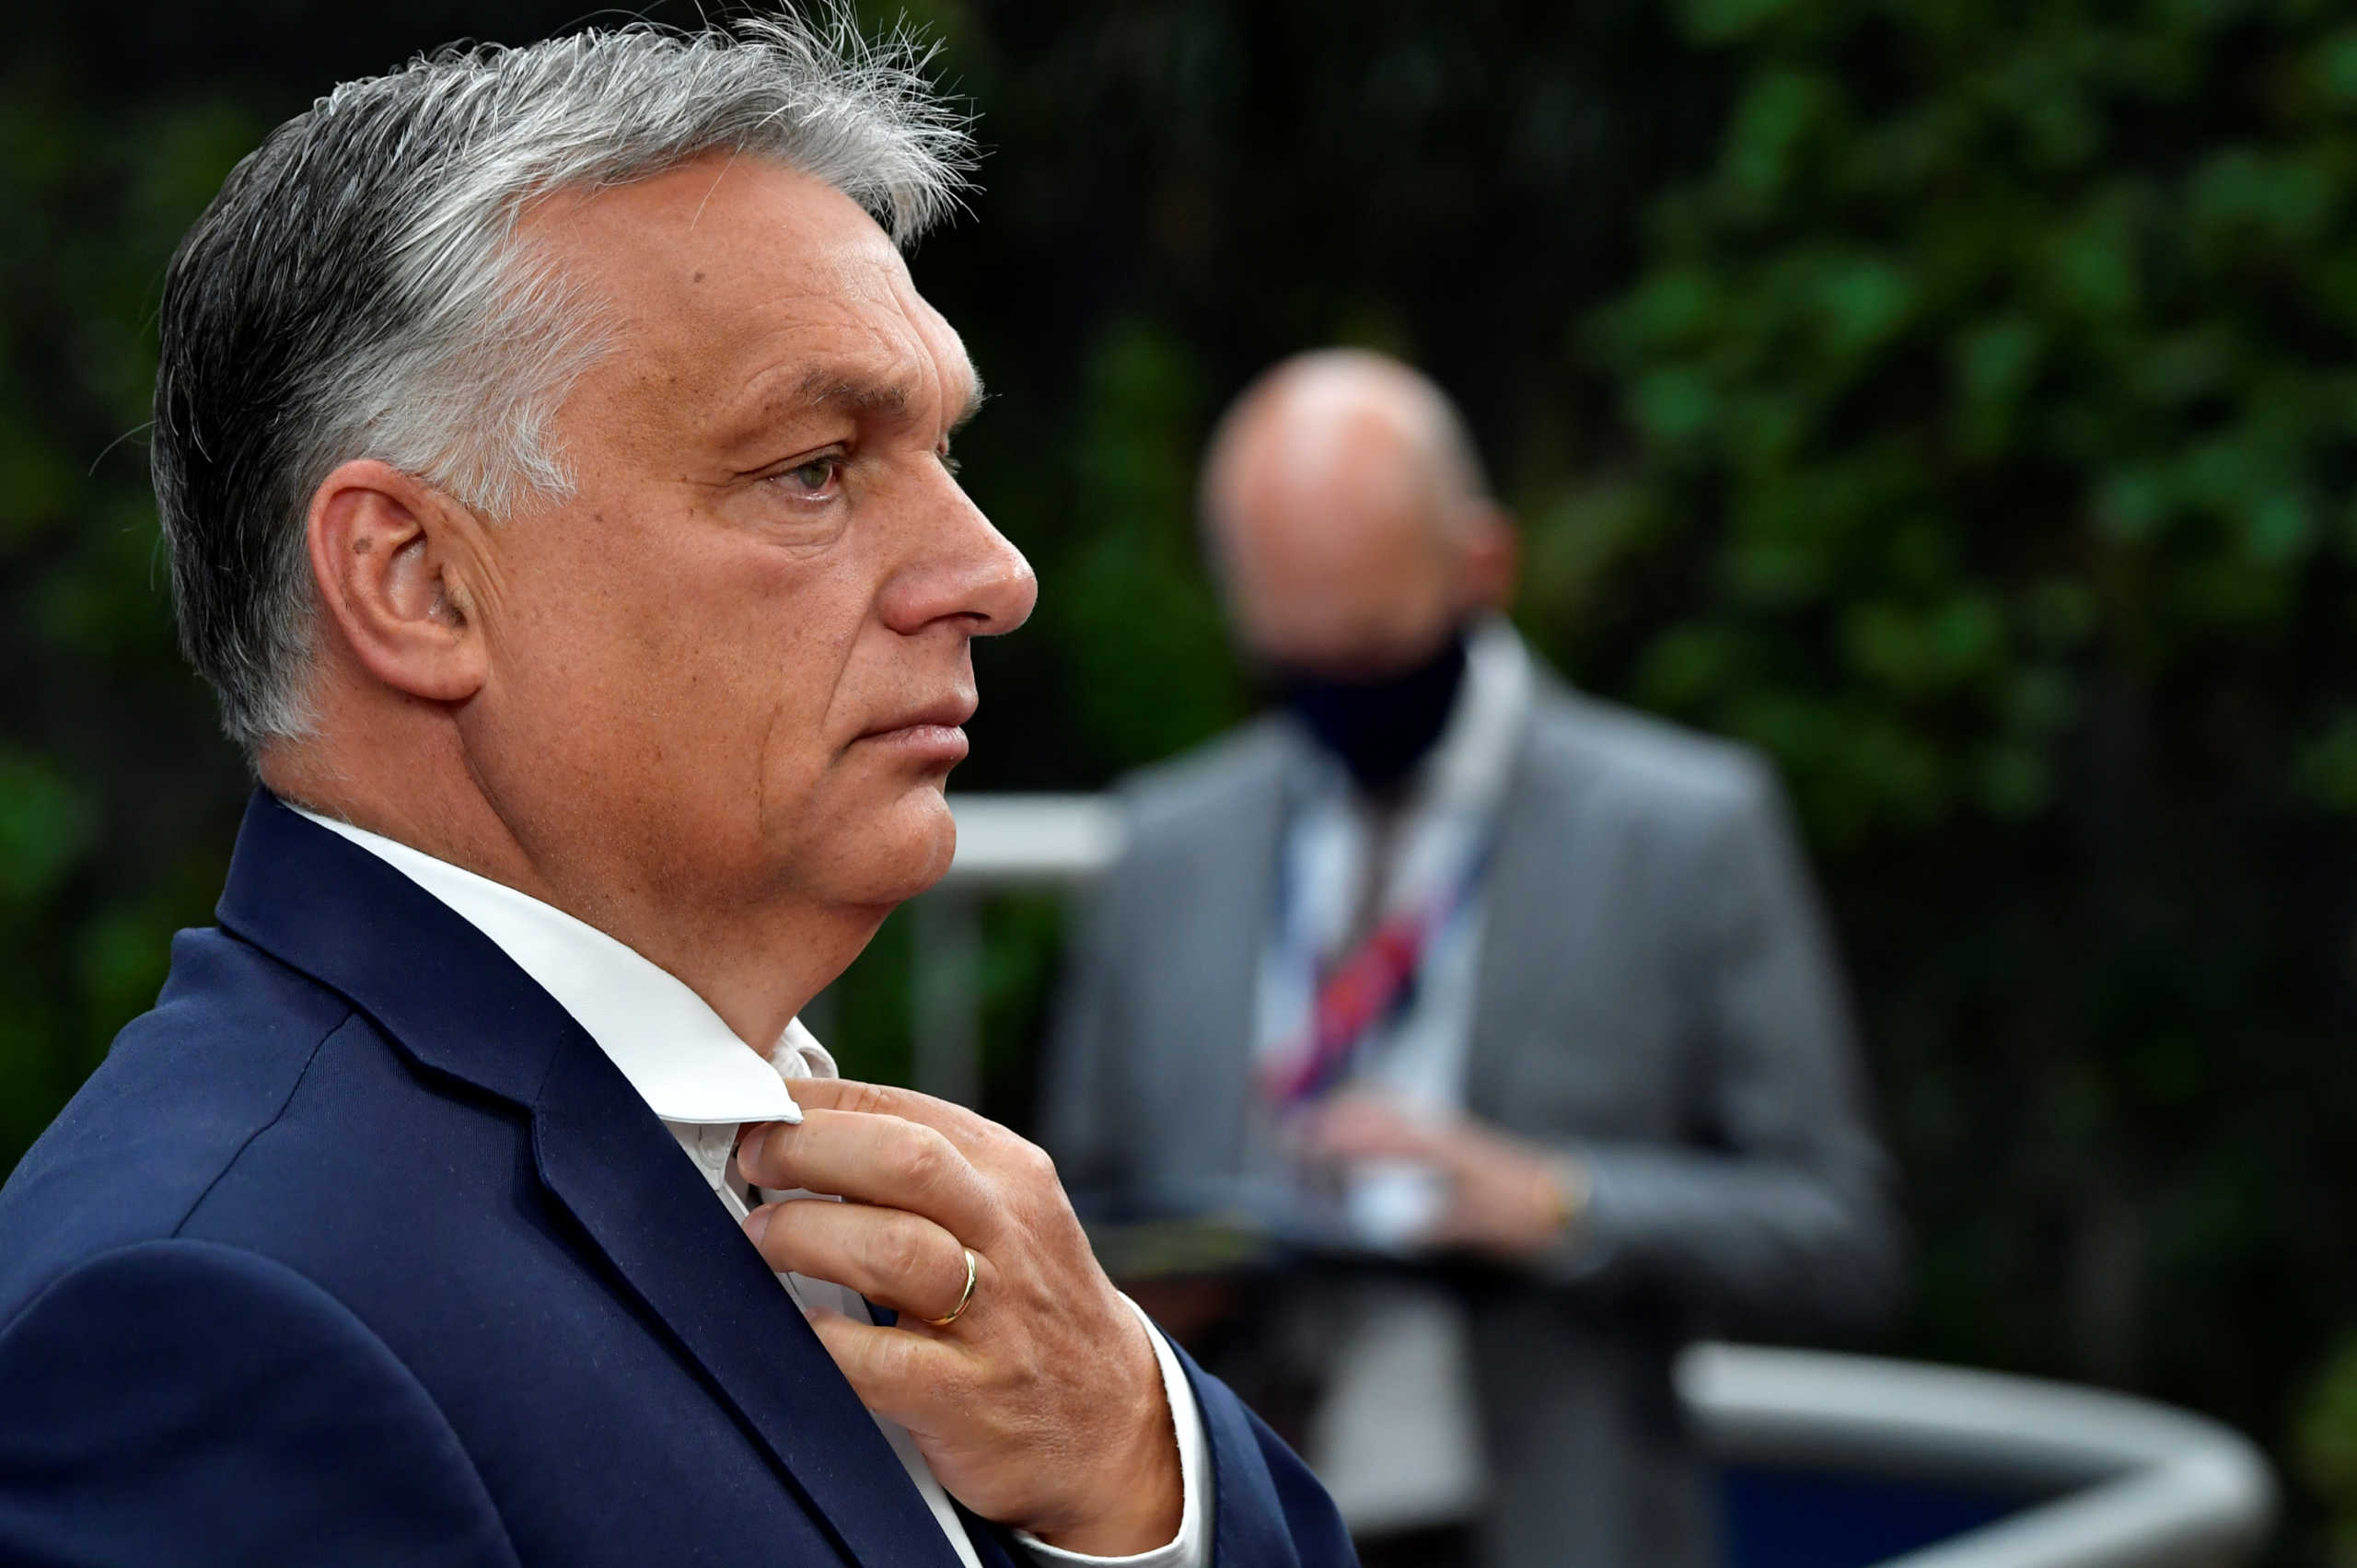 Ουγγαρία: Καμία σκέψη για επιπλέον μέτρα παρά την αλματώδη αύξηση κρουσμάτων κορονοϊού και θανάτων